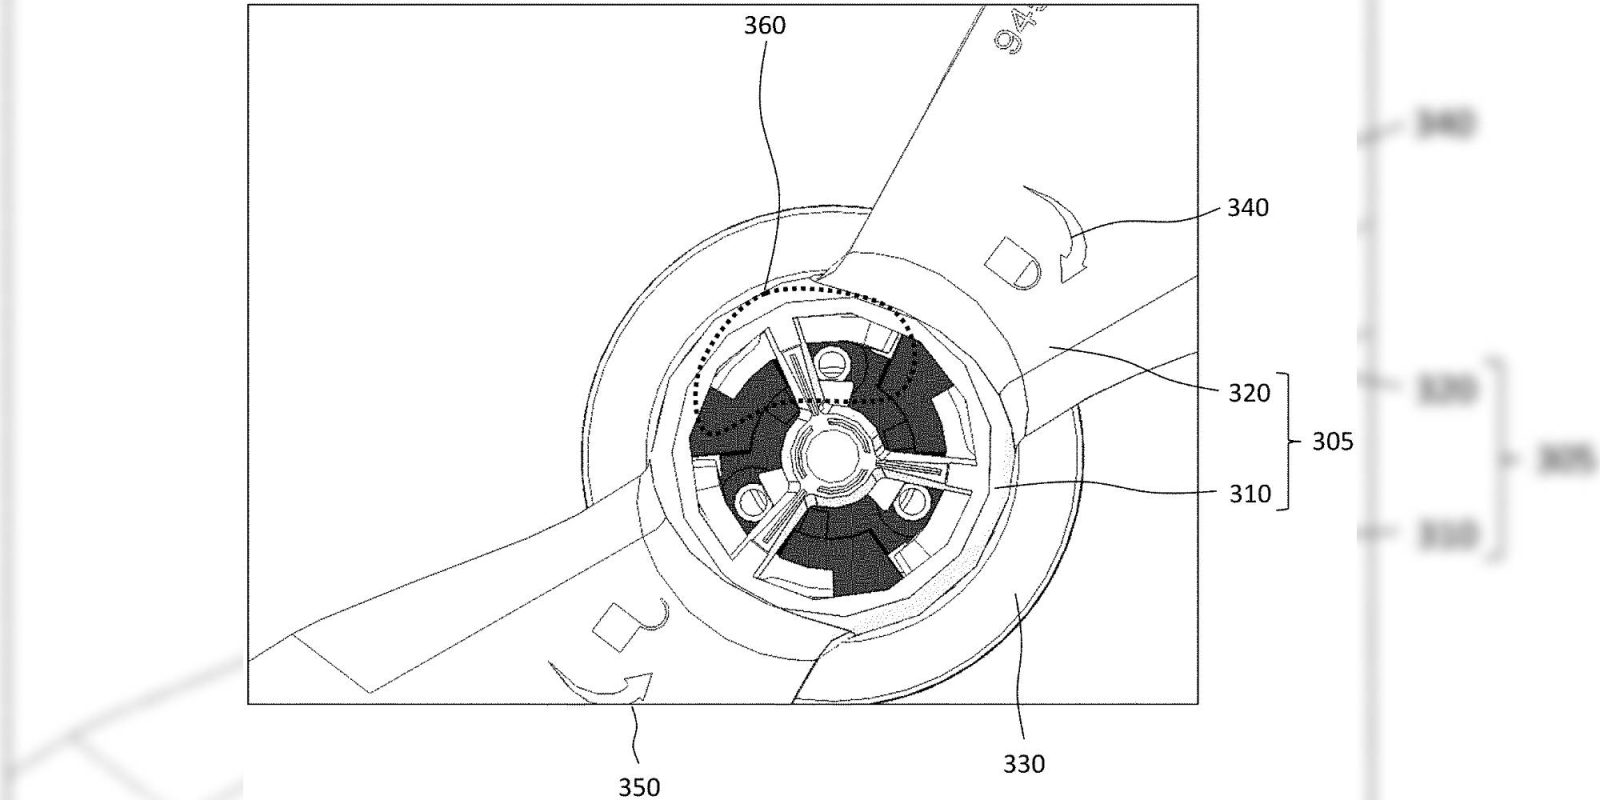 DJI patent propeller detection